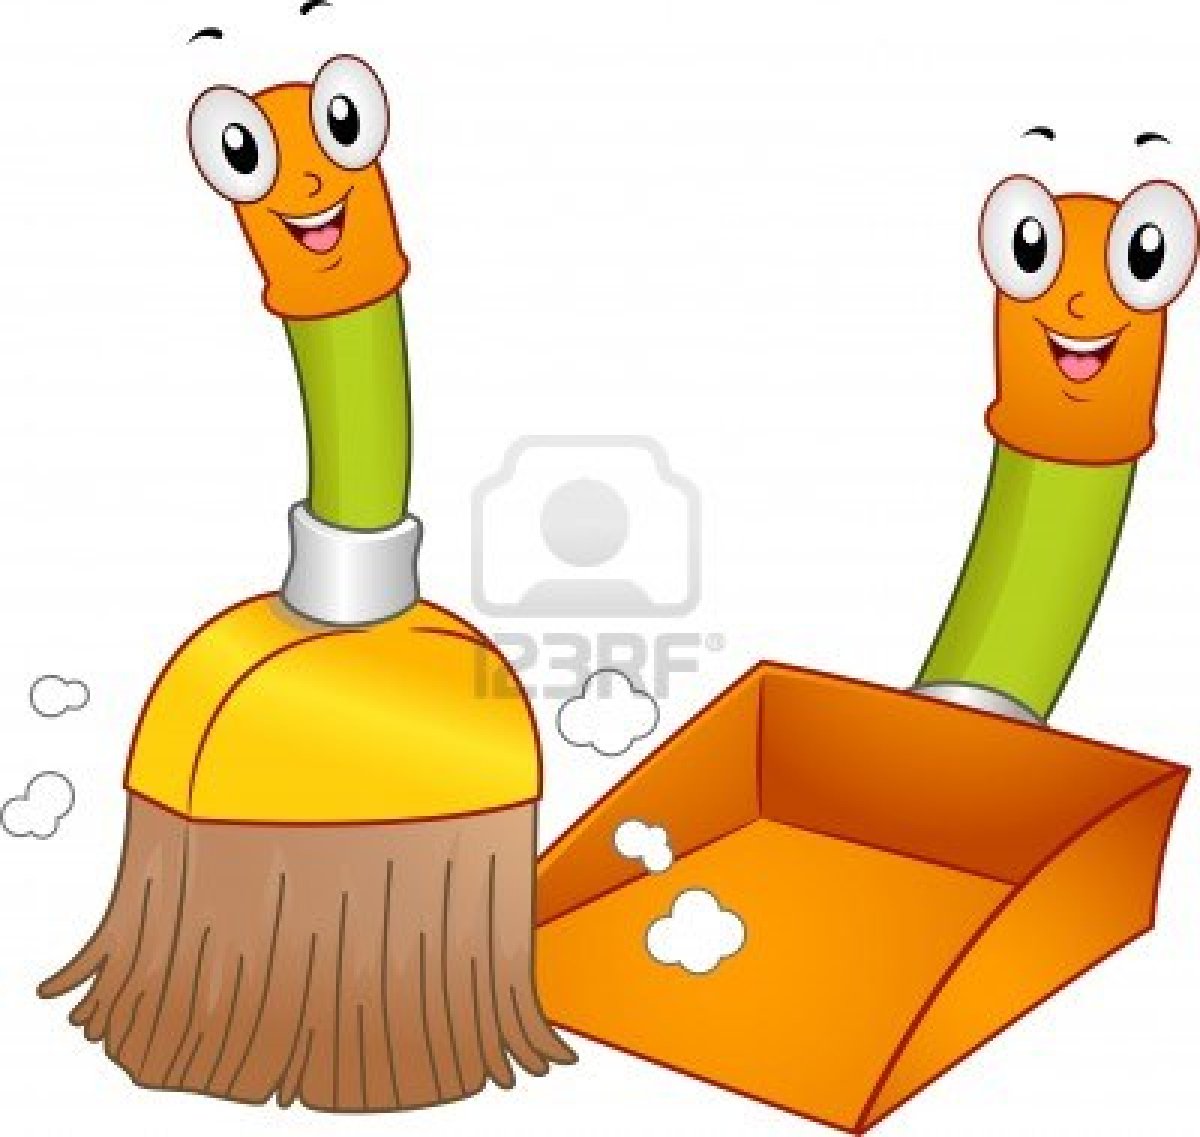 15304274-mascot-illustration-eines-broom